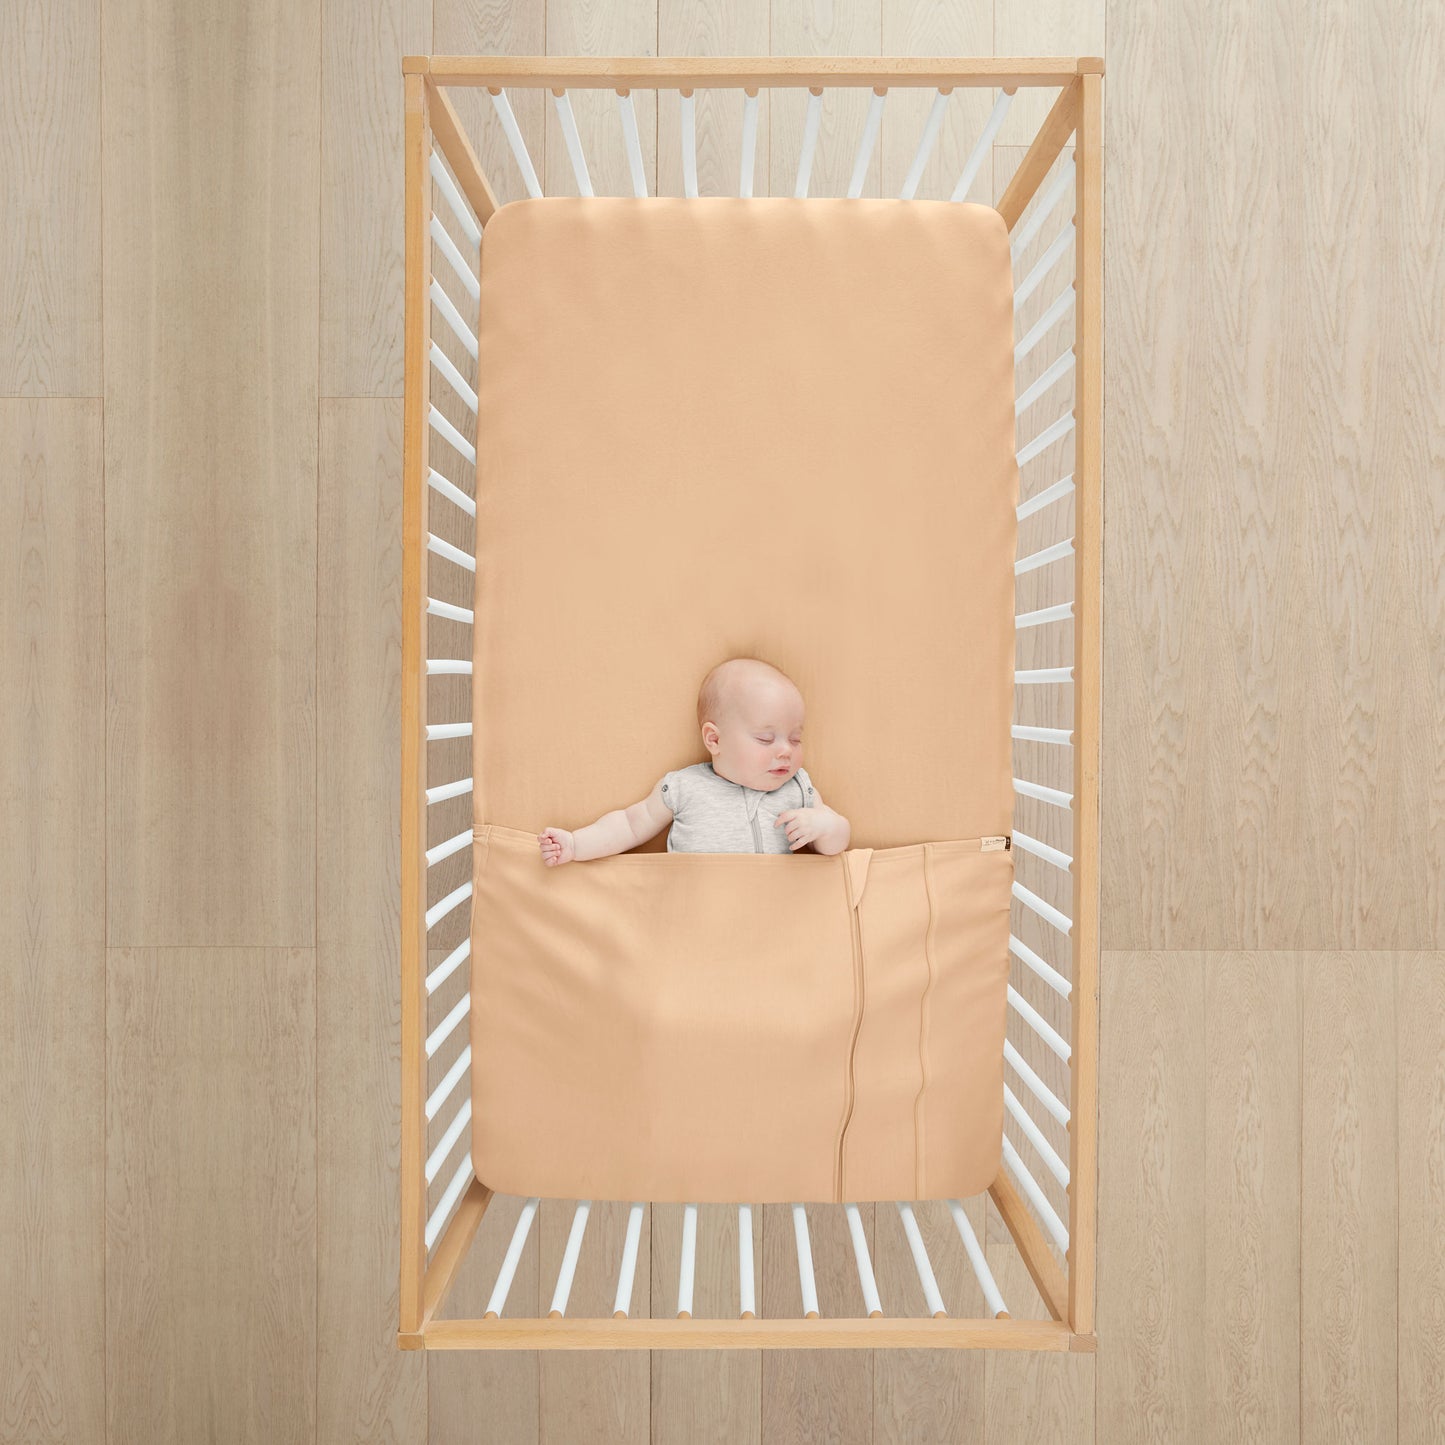 Baby Tuck Sheet - Cot/Crib